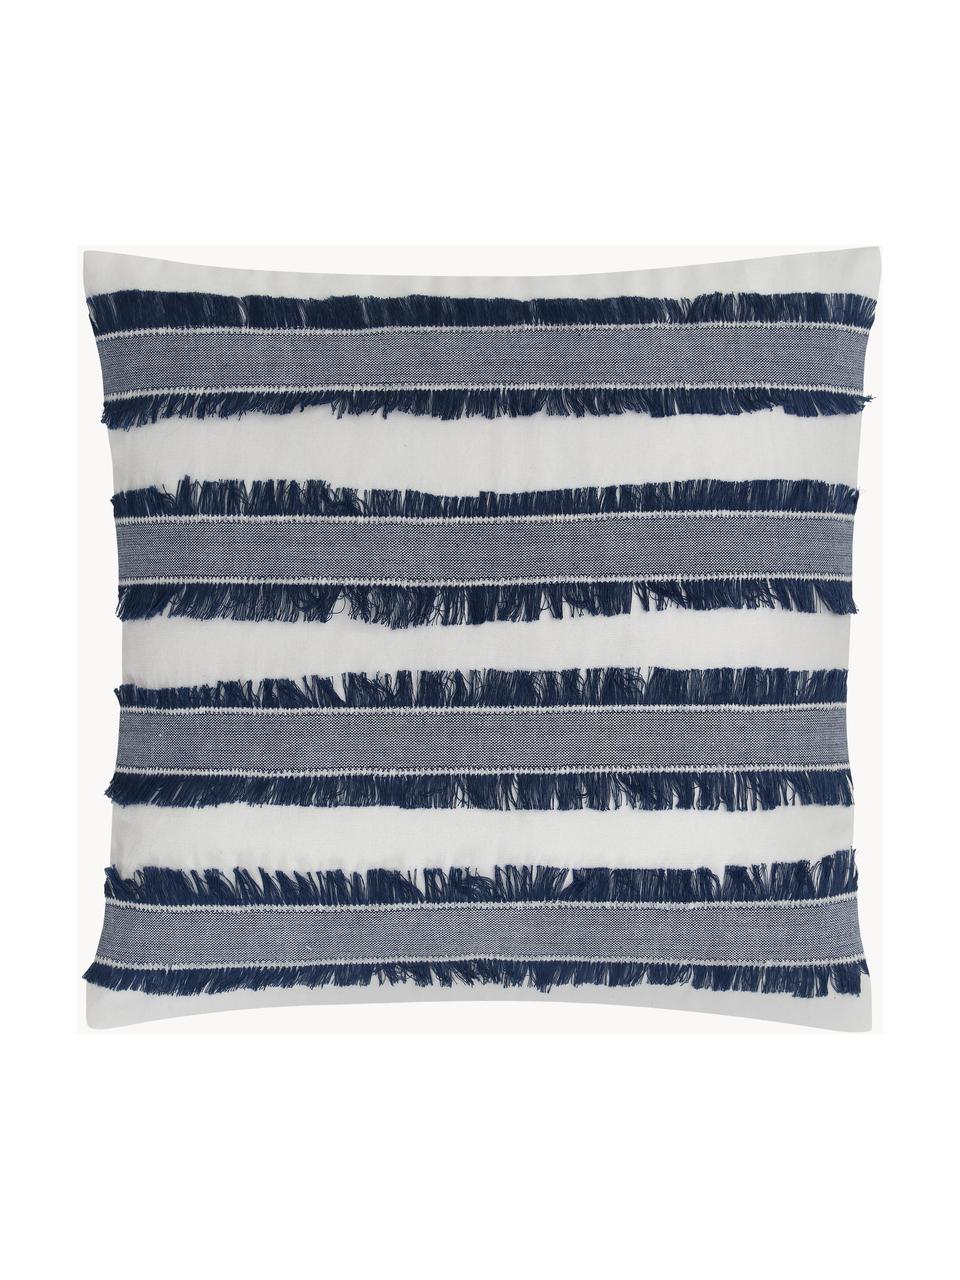 Poszewka na poduszkę z bawełny z frędzlami Raja, 100% bawełna, Kremowobiały, niebieski, S 45 x D 45 cm